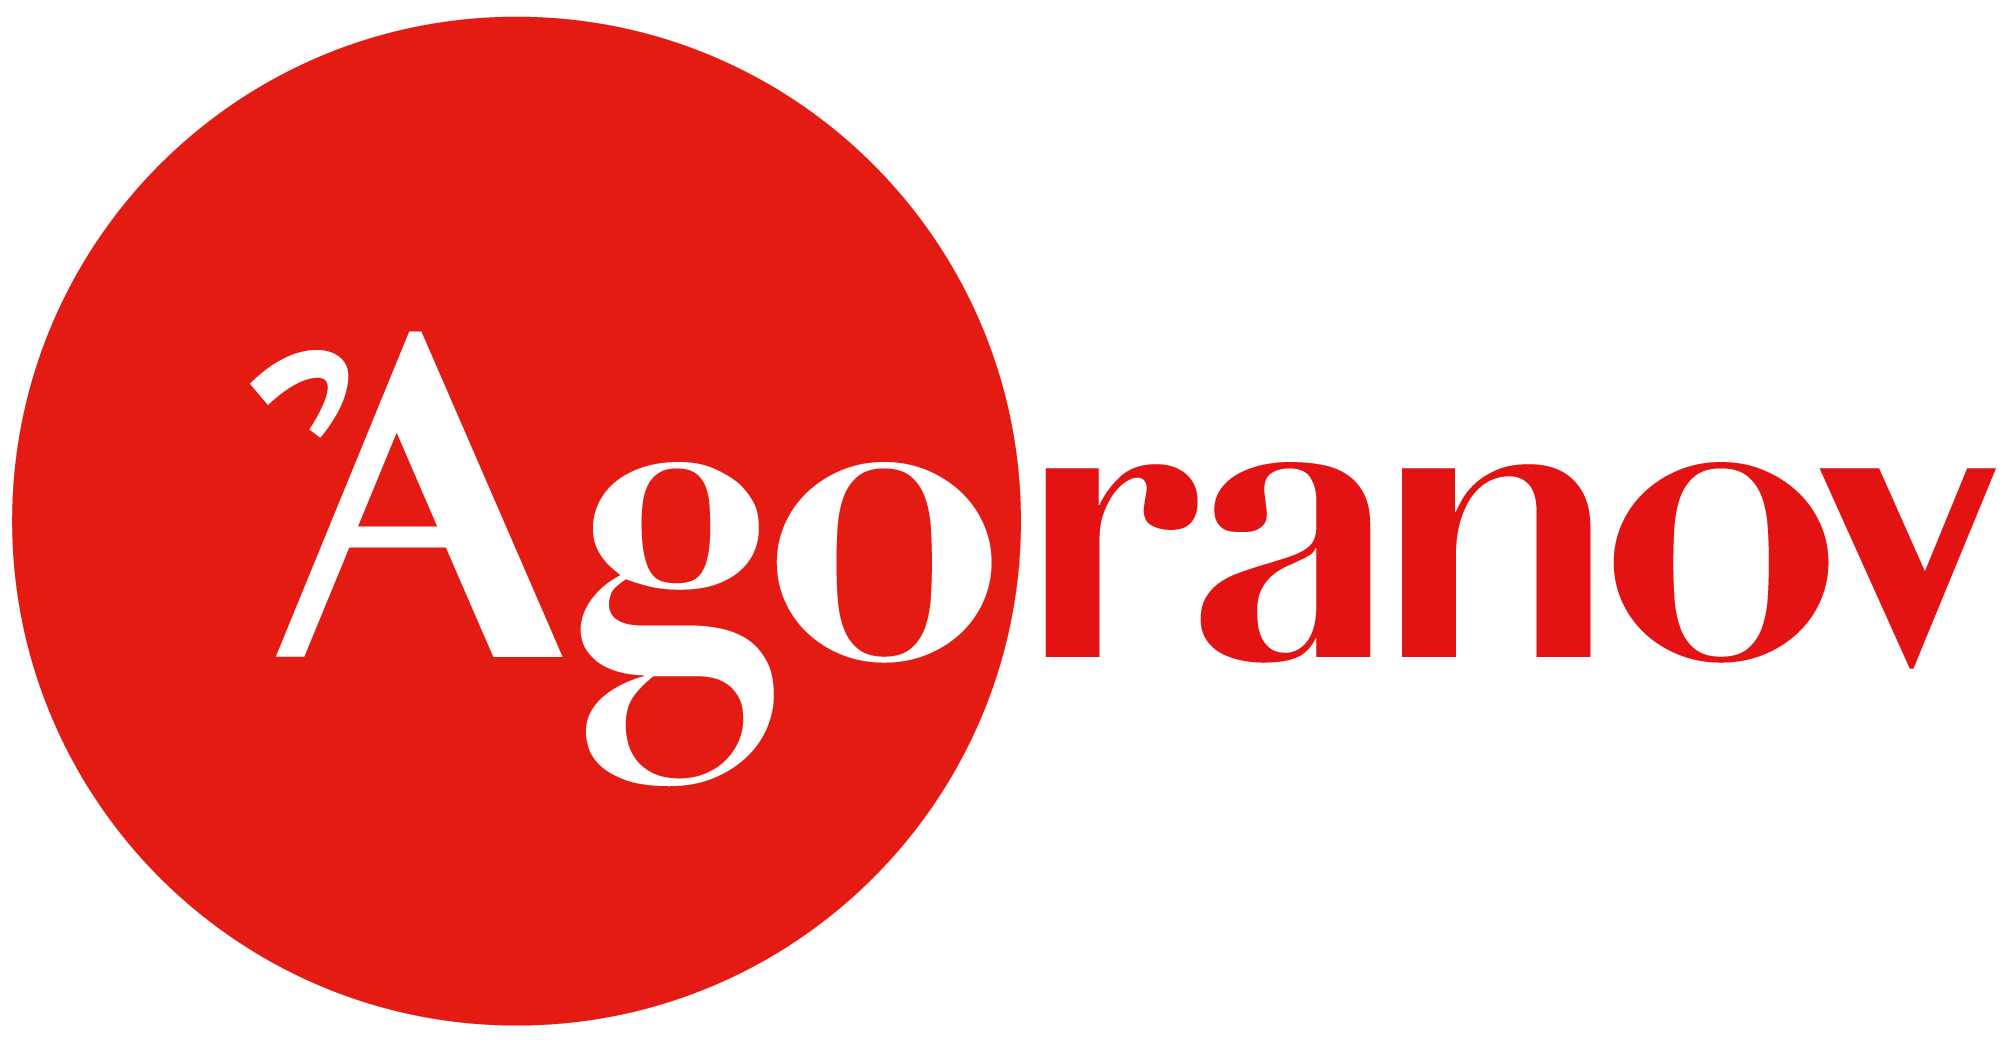 agoranov